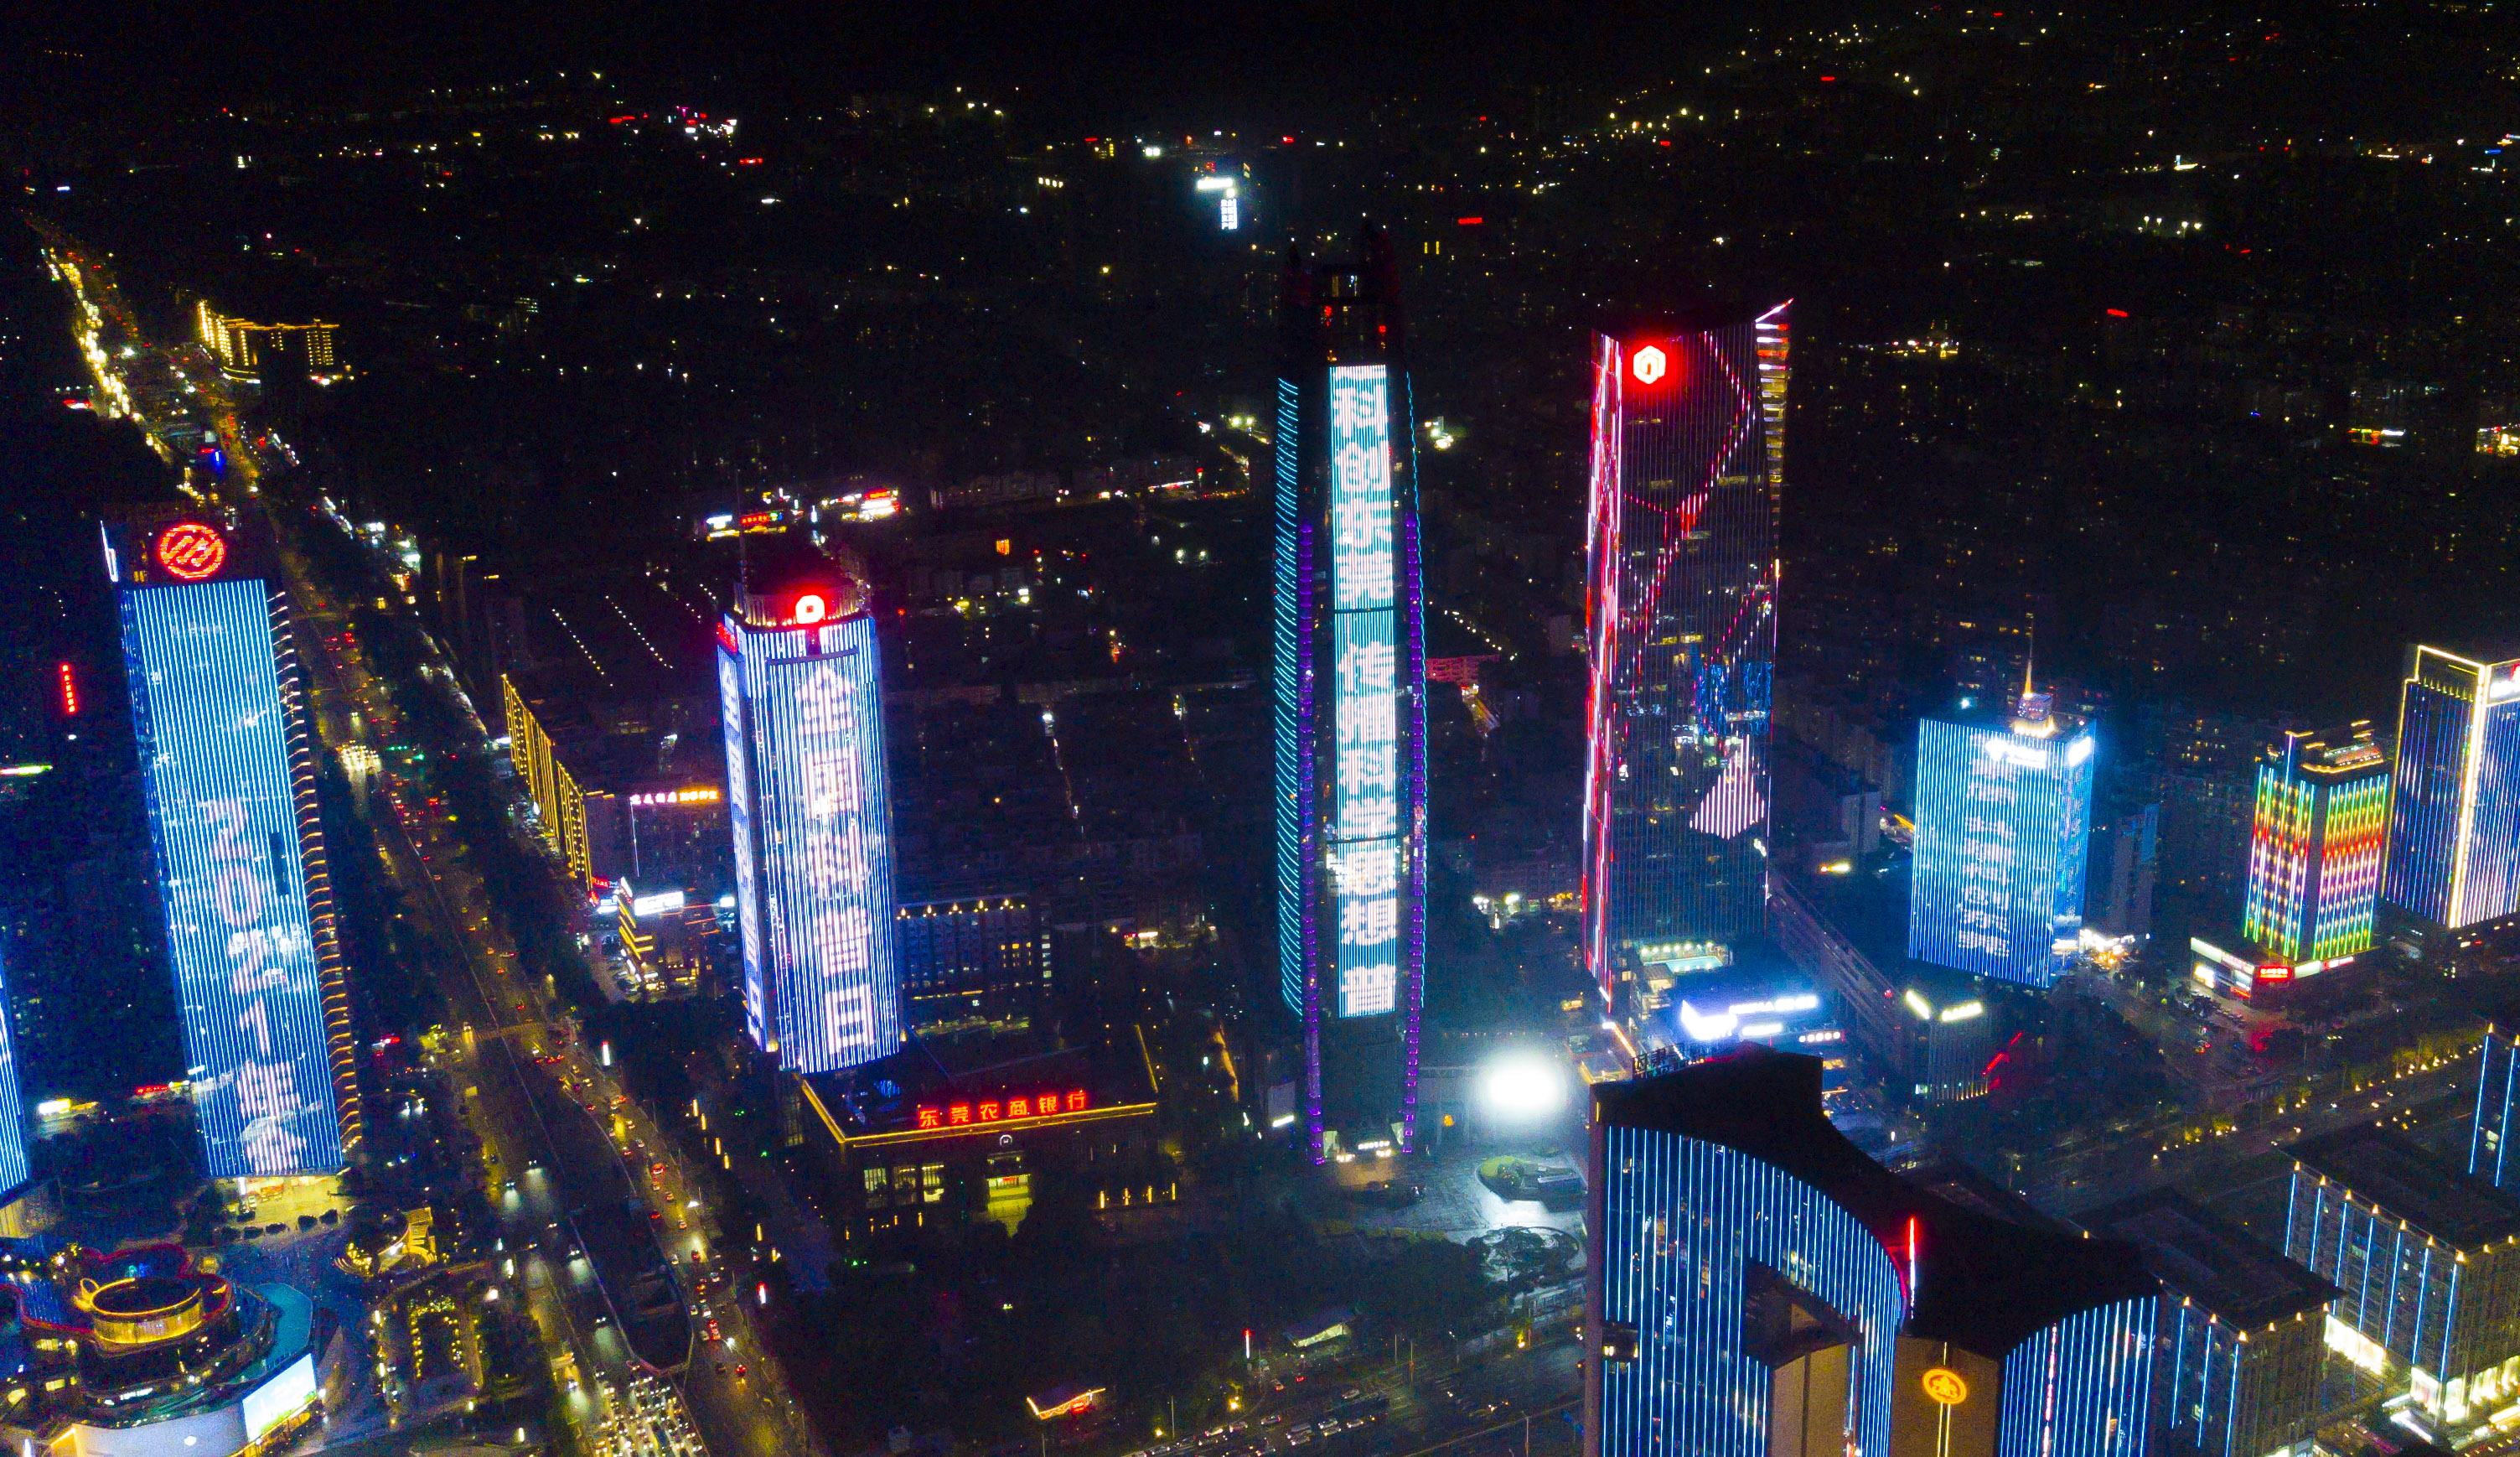 东莞cbd高楼集体亮灯滚动宣传2021年全国科普日